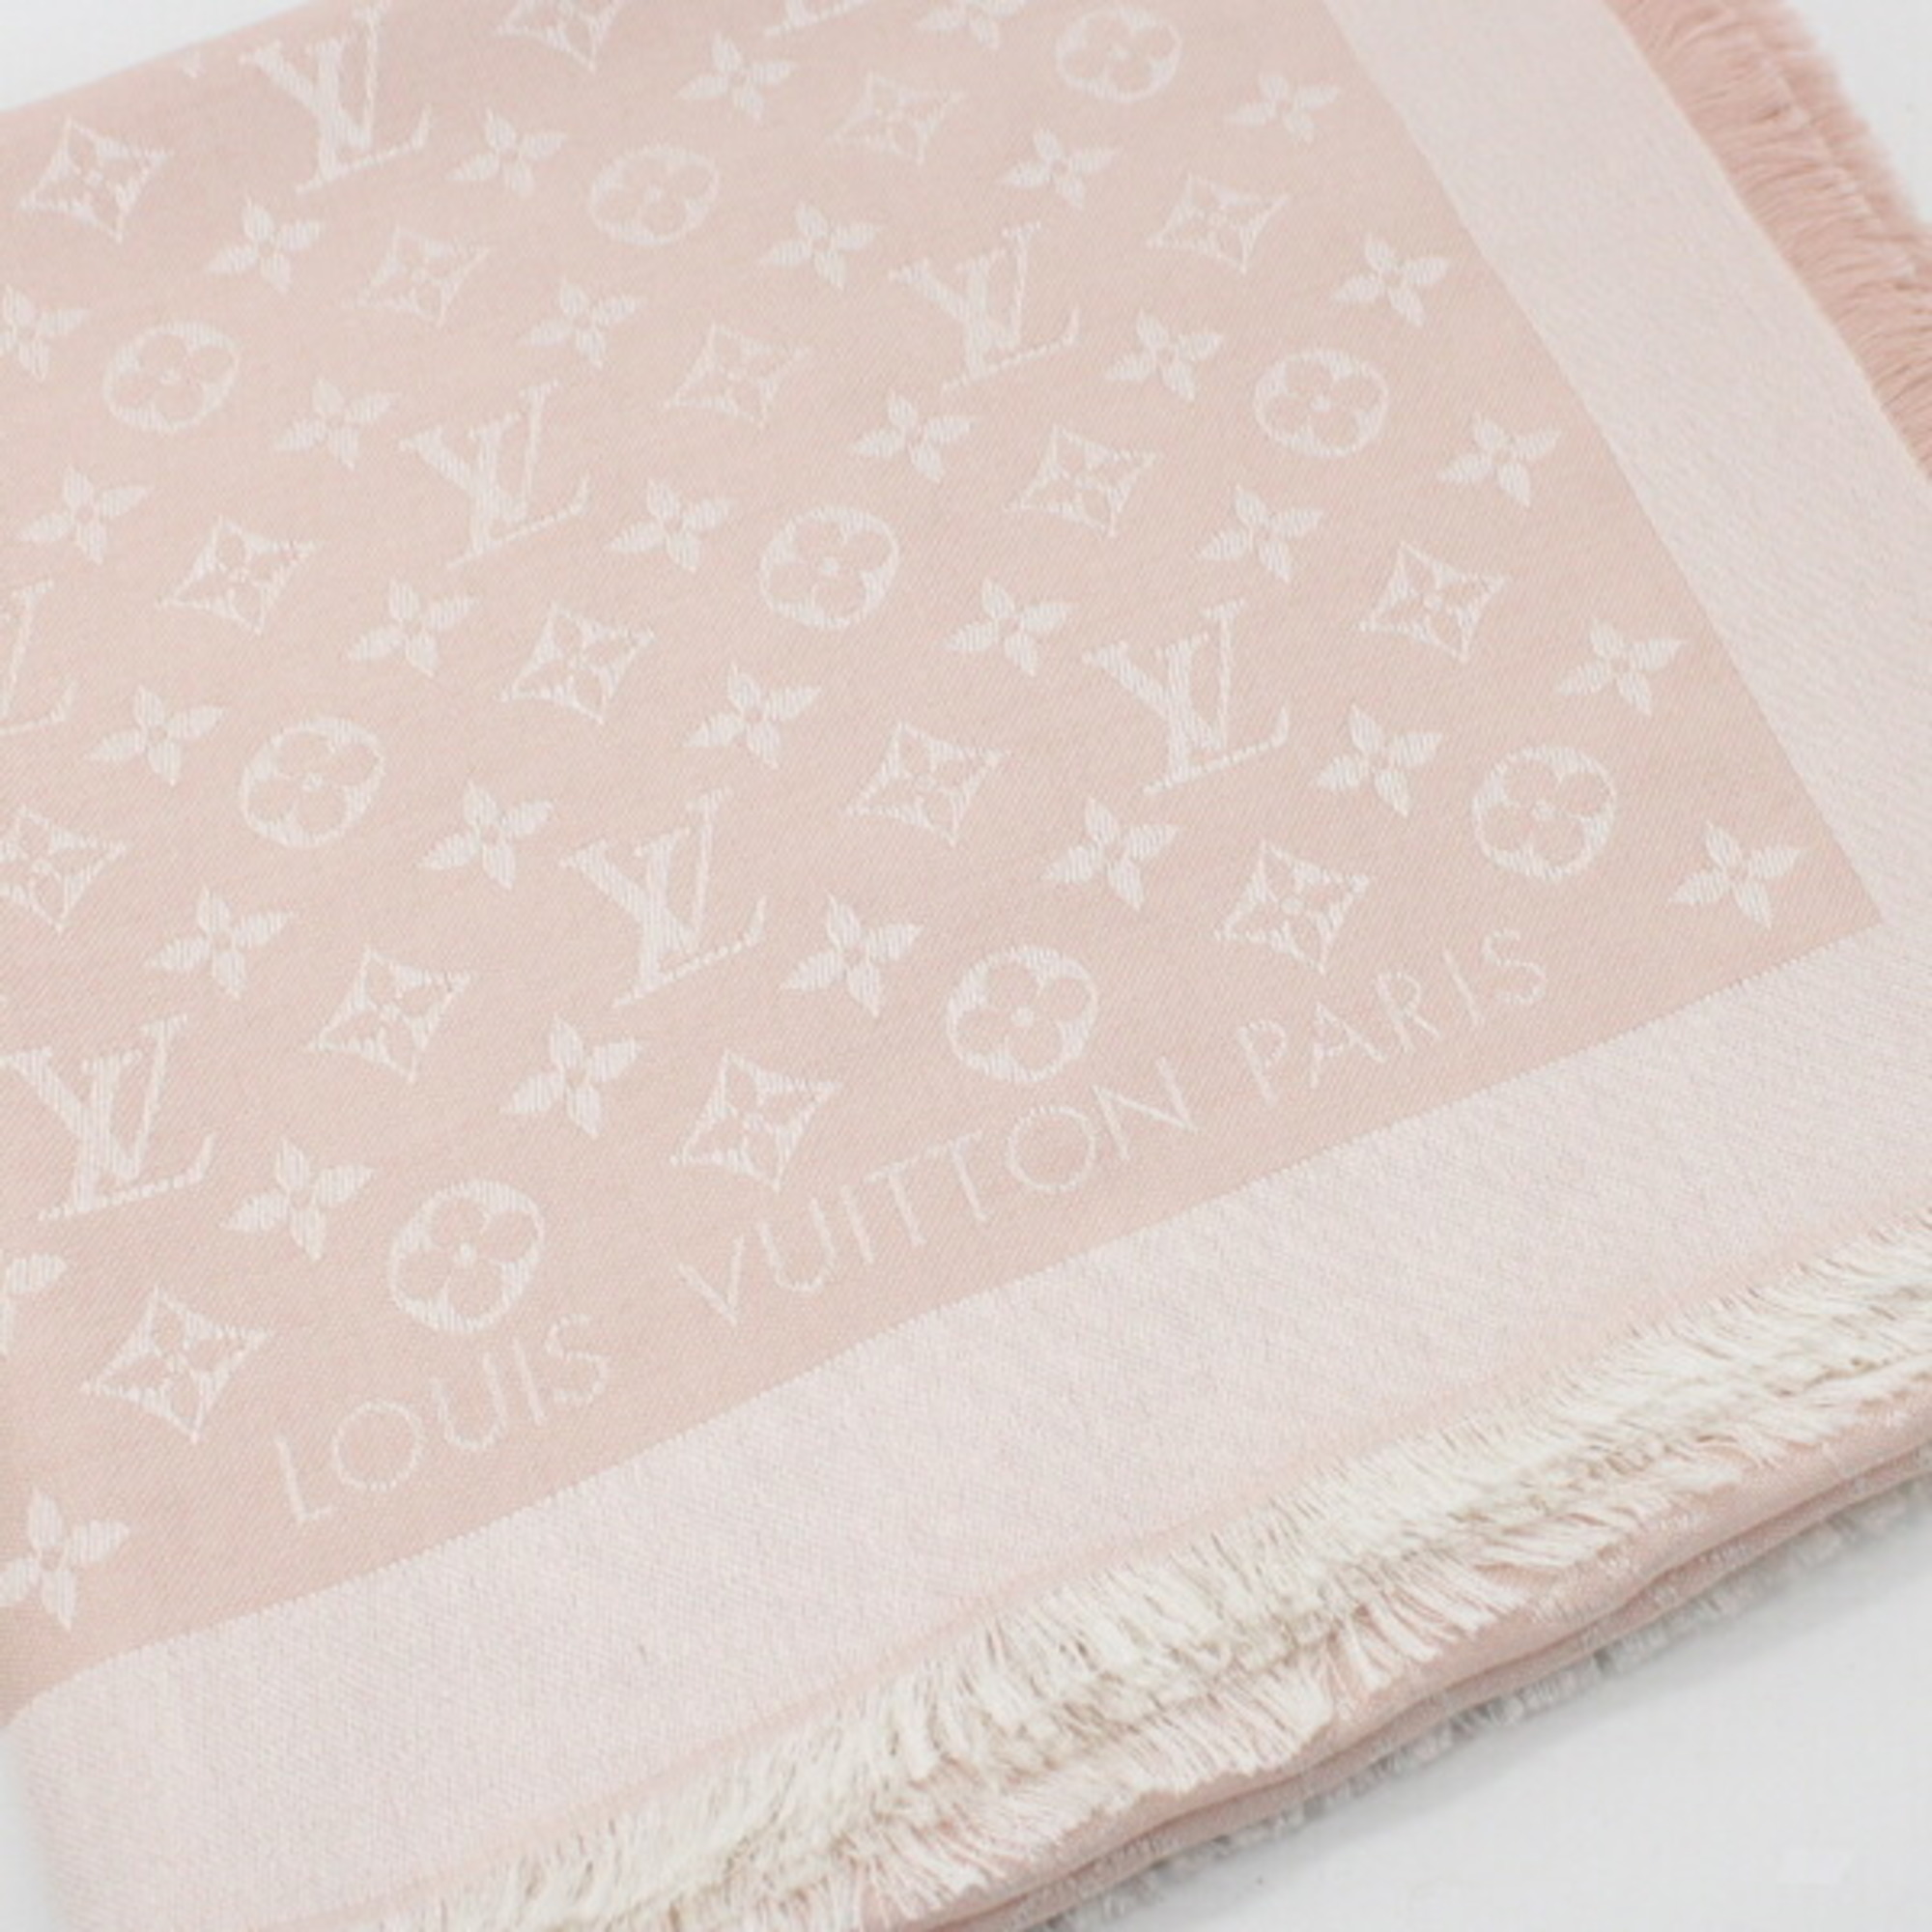 Louis Vuitton Monogram Large Shawl Stole Pink Rose 140cm 60% Silk 40% Wool M71329 Scarf Women's LOUIS VUITTON KM2716